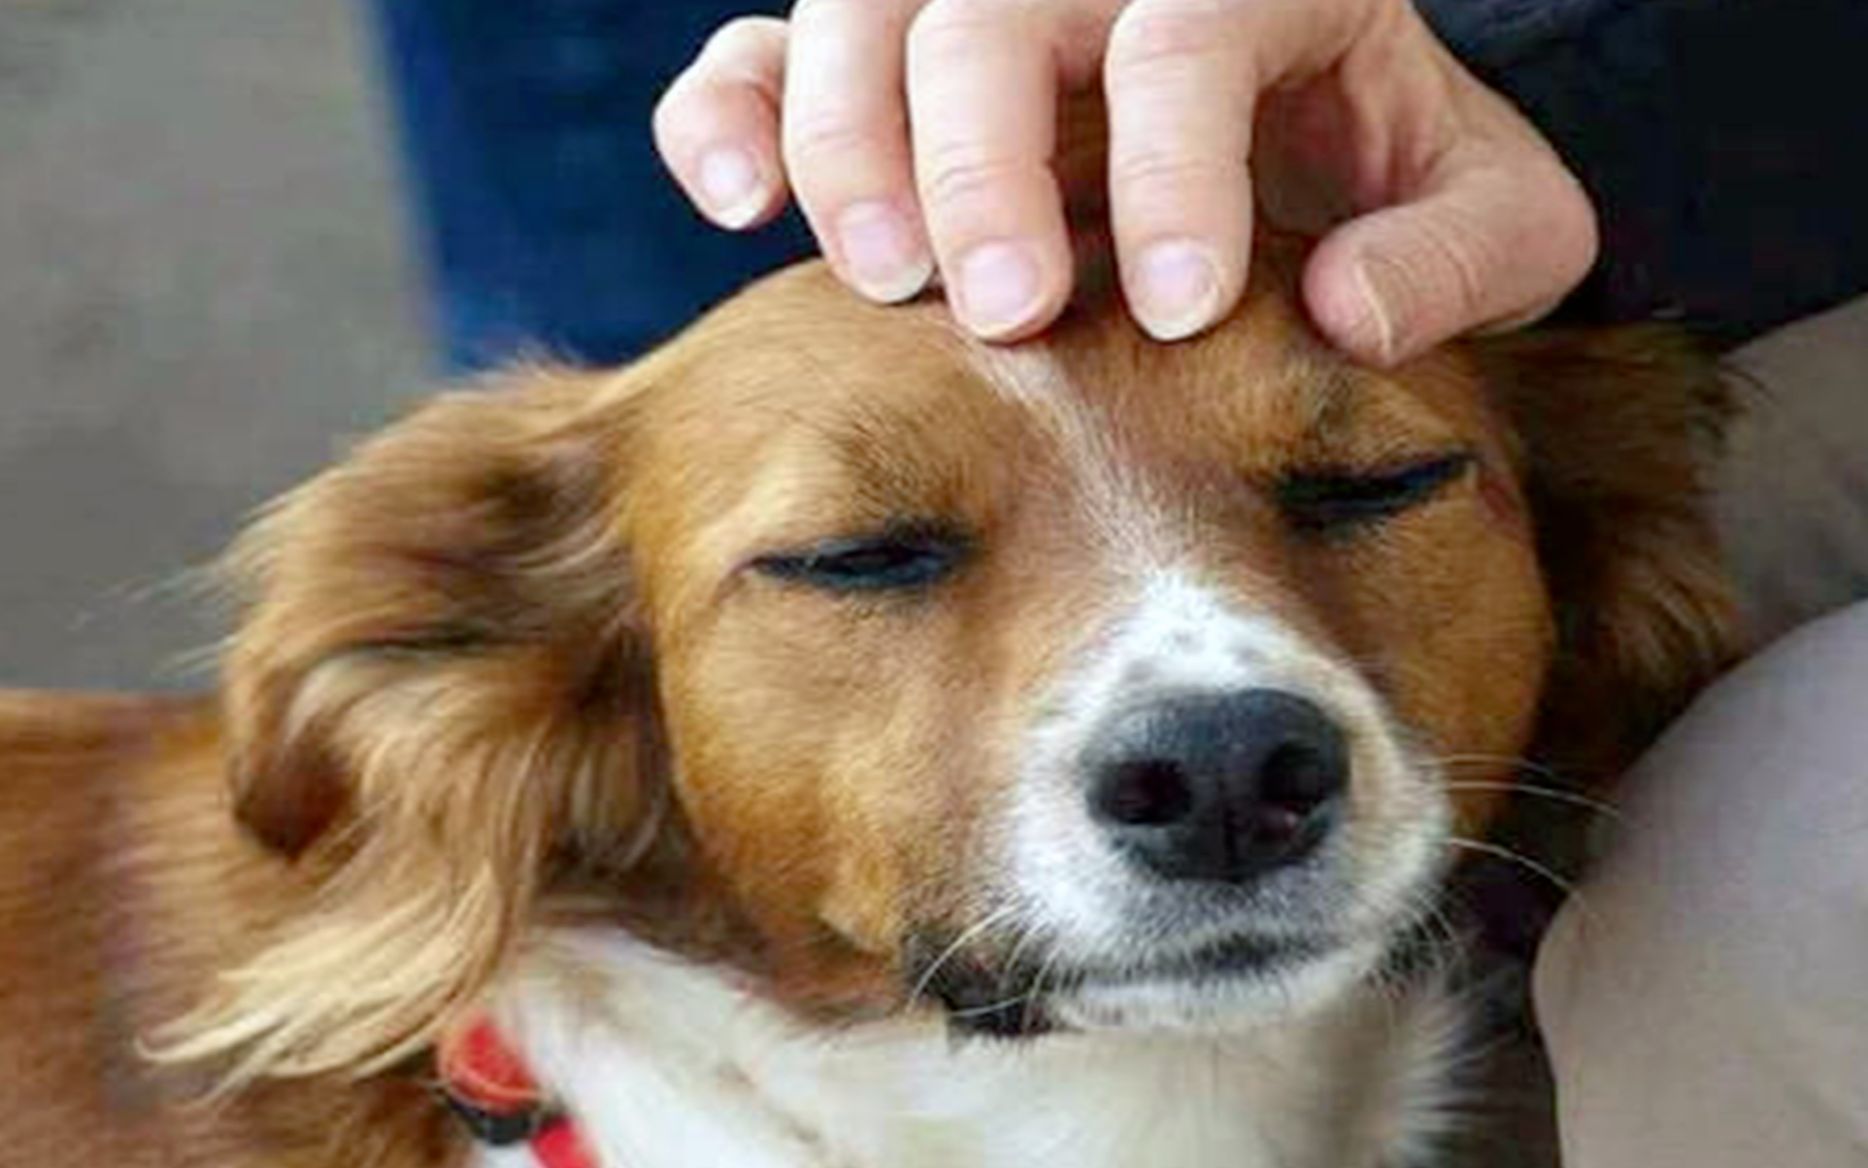 人们总喜欢摸狗头，但你知道在狗狗的世界里，摸头代表什么吗？